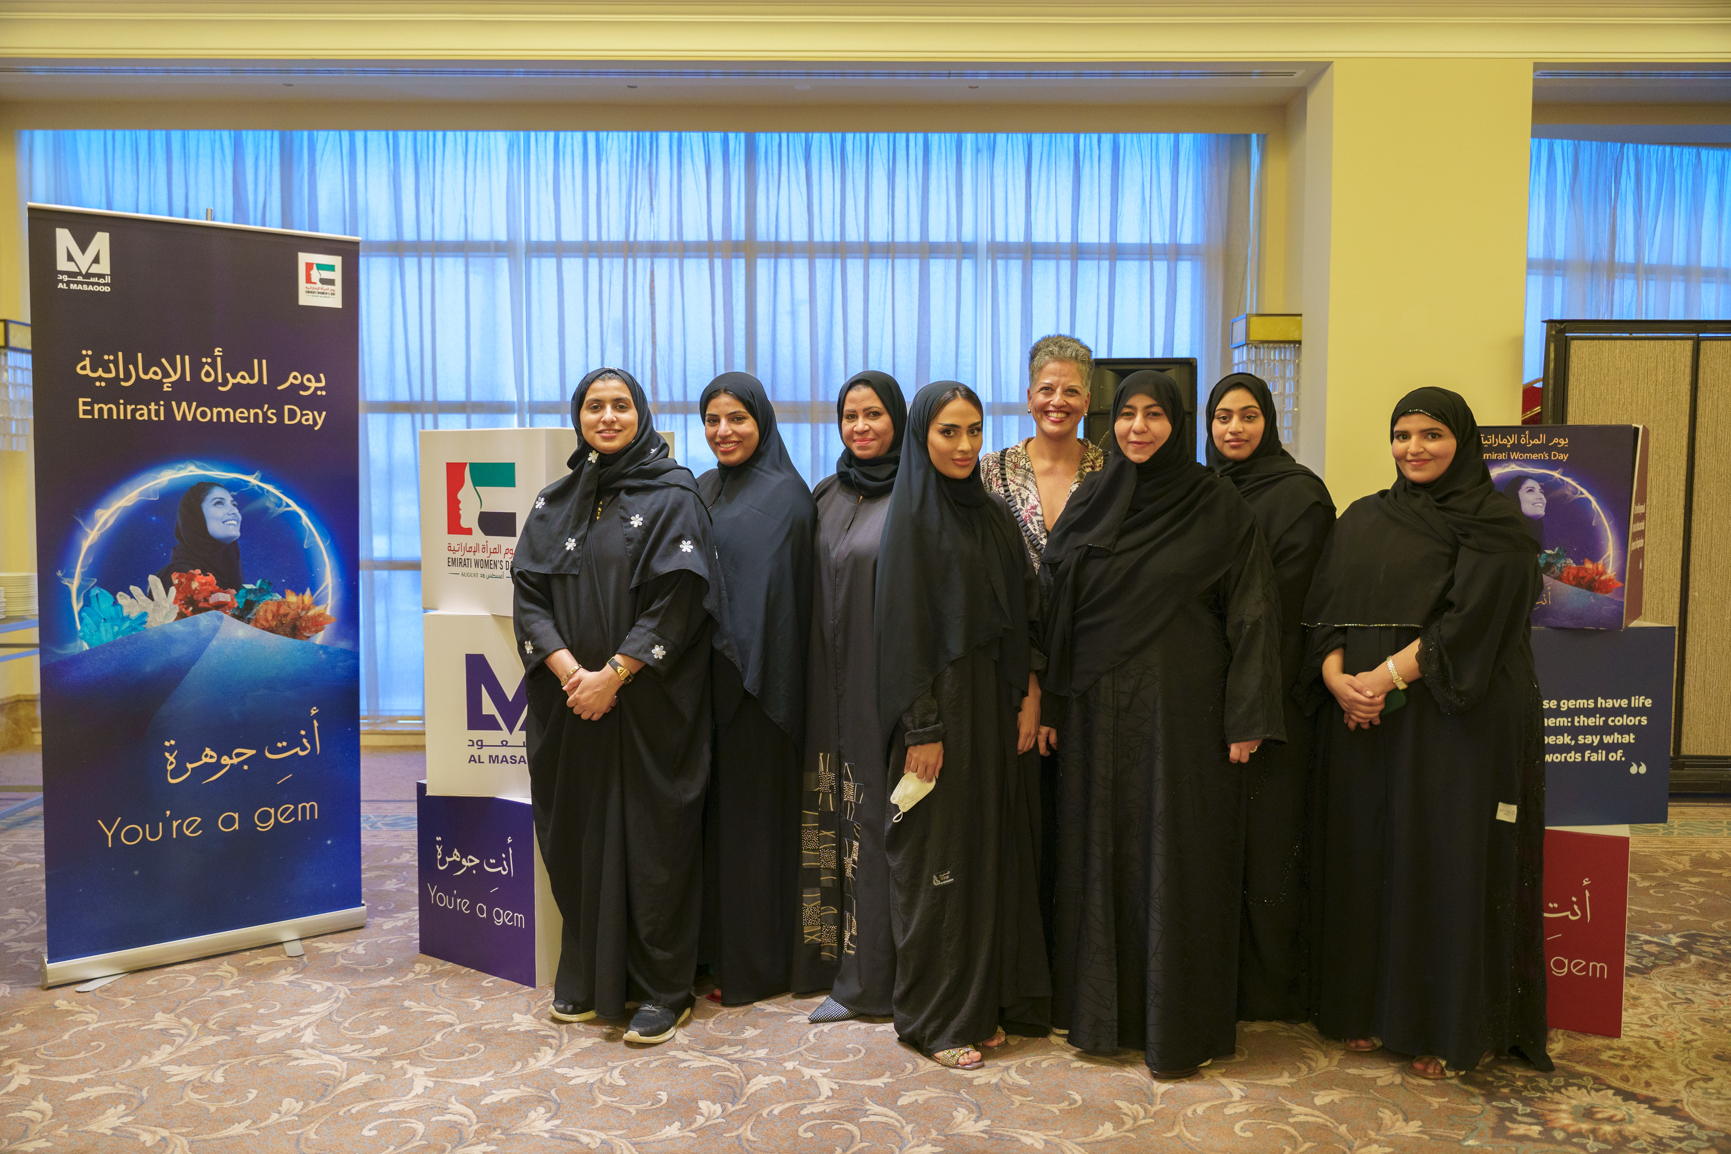 "مجموعة المسعود" تنظّم المجلس النسائي "أنتِ جوهرة" احتفاءً بيوم المرأة الإماراتية